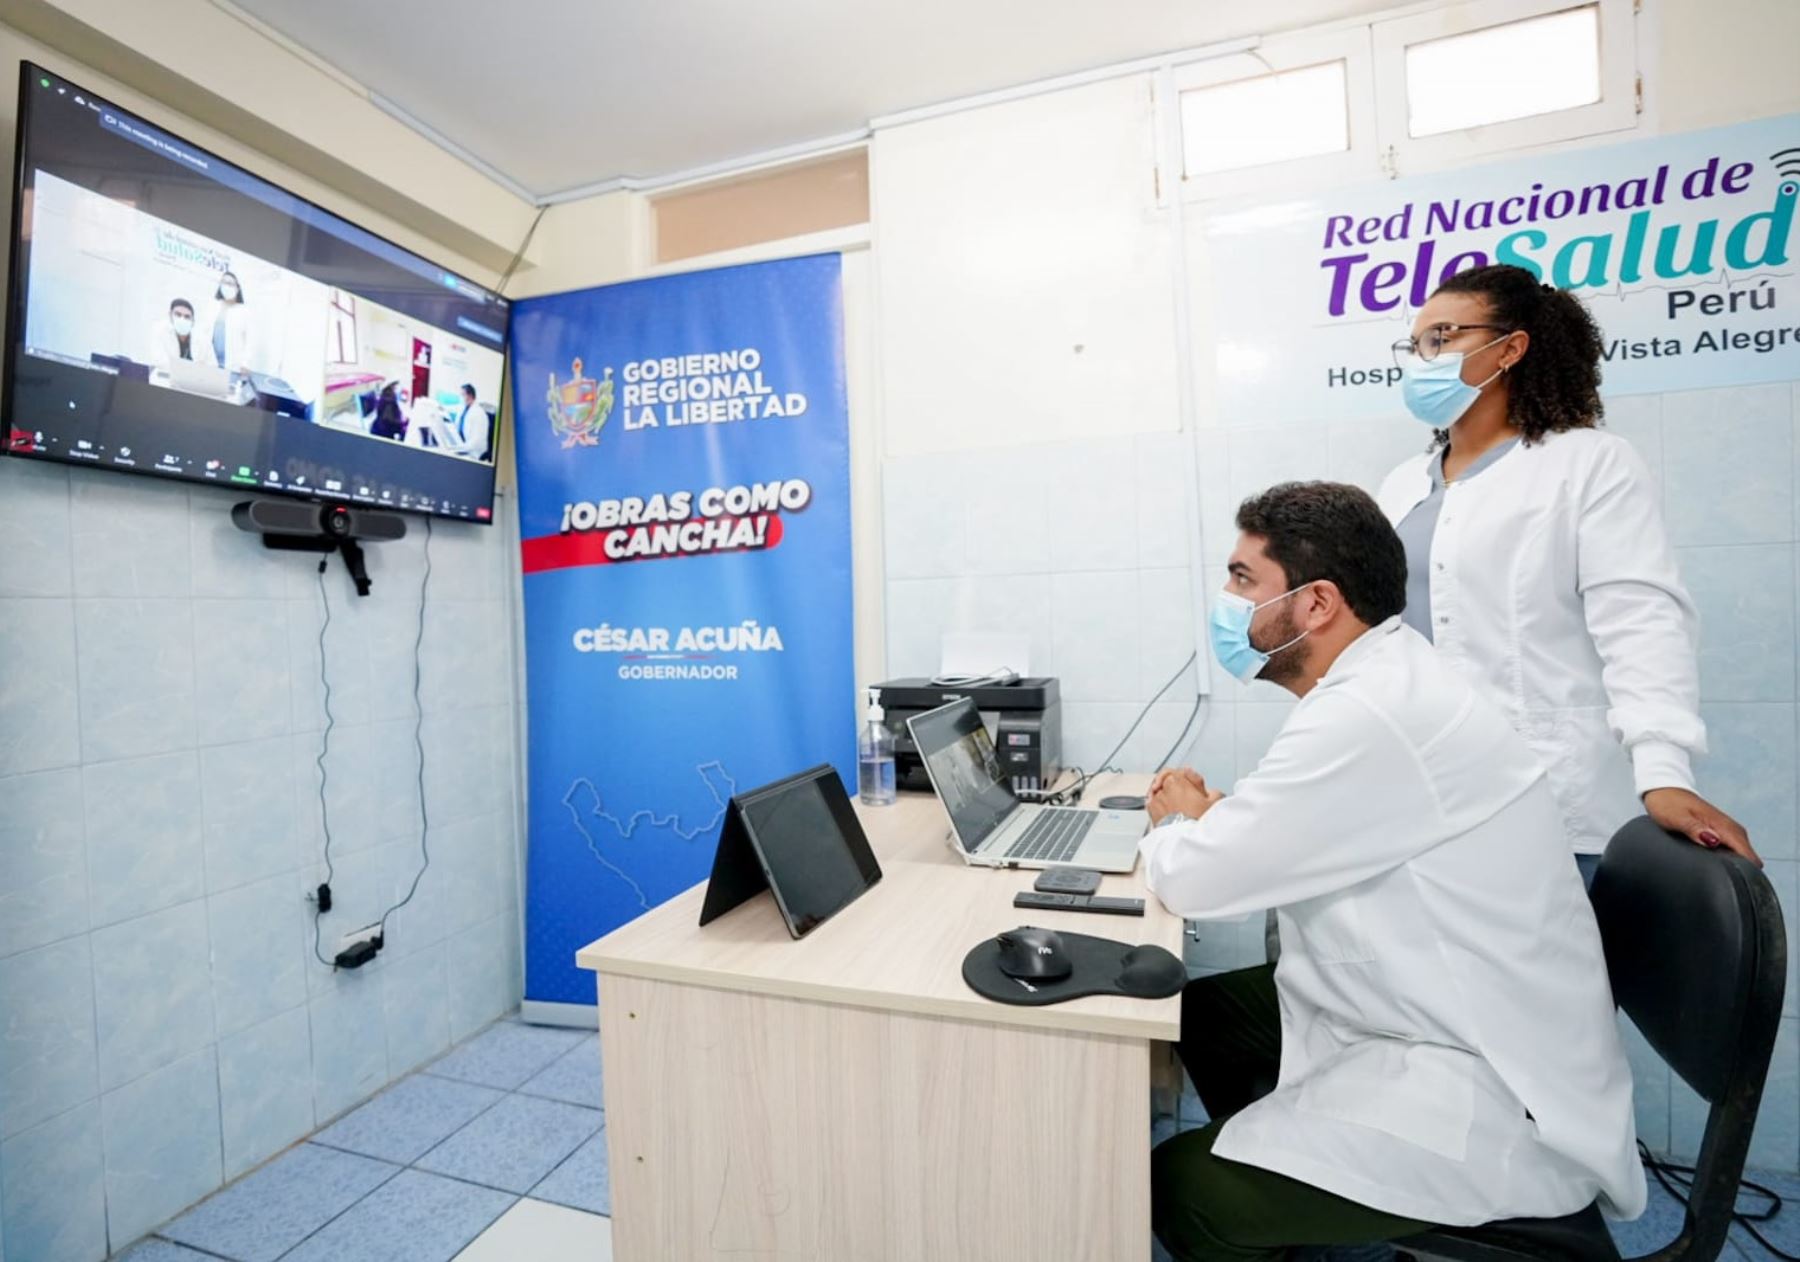 Gobierno Regional de La Libertad implementa el servicio de telemedicina en 268 centros de salud de la región. ANDINA/Difusión